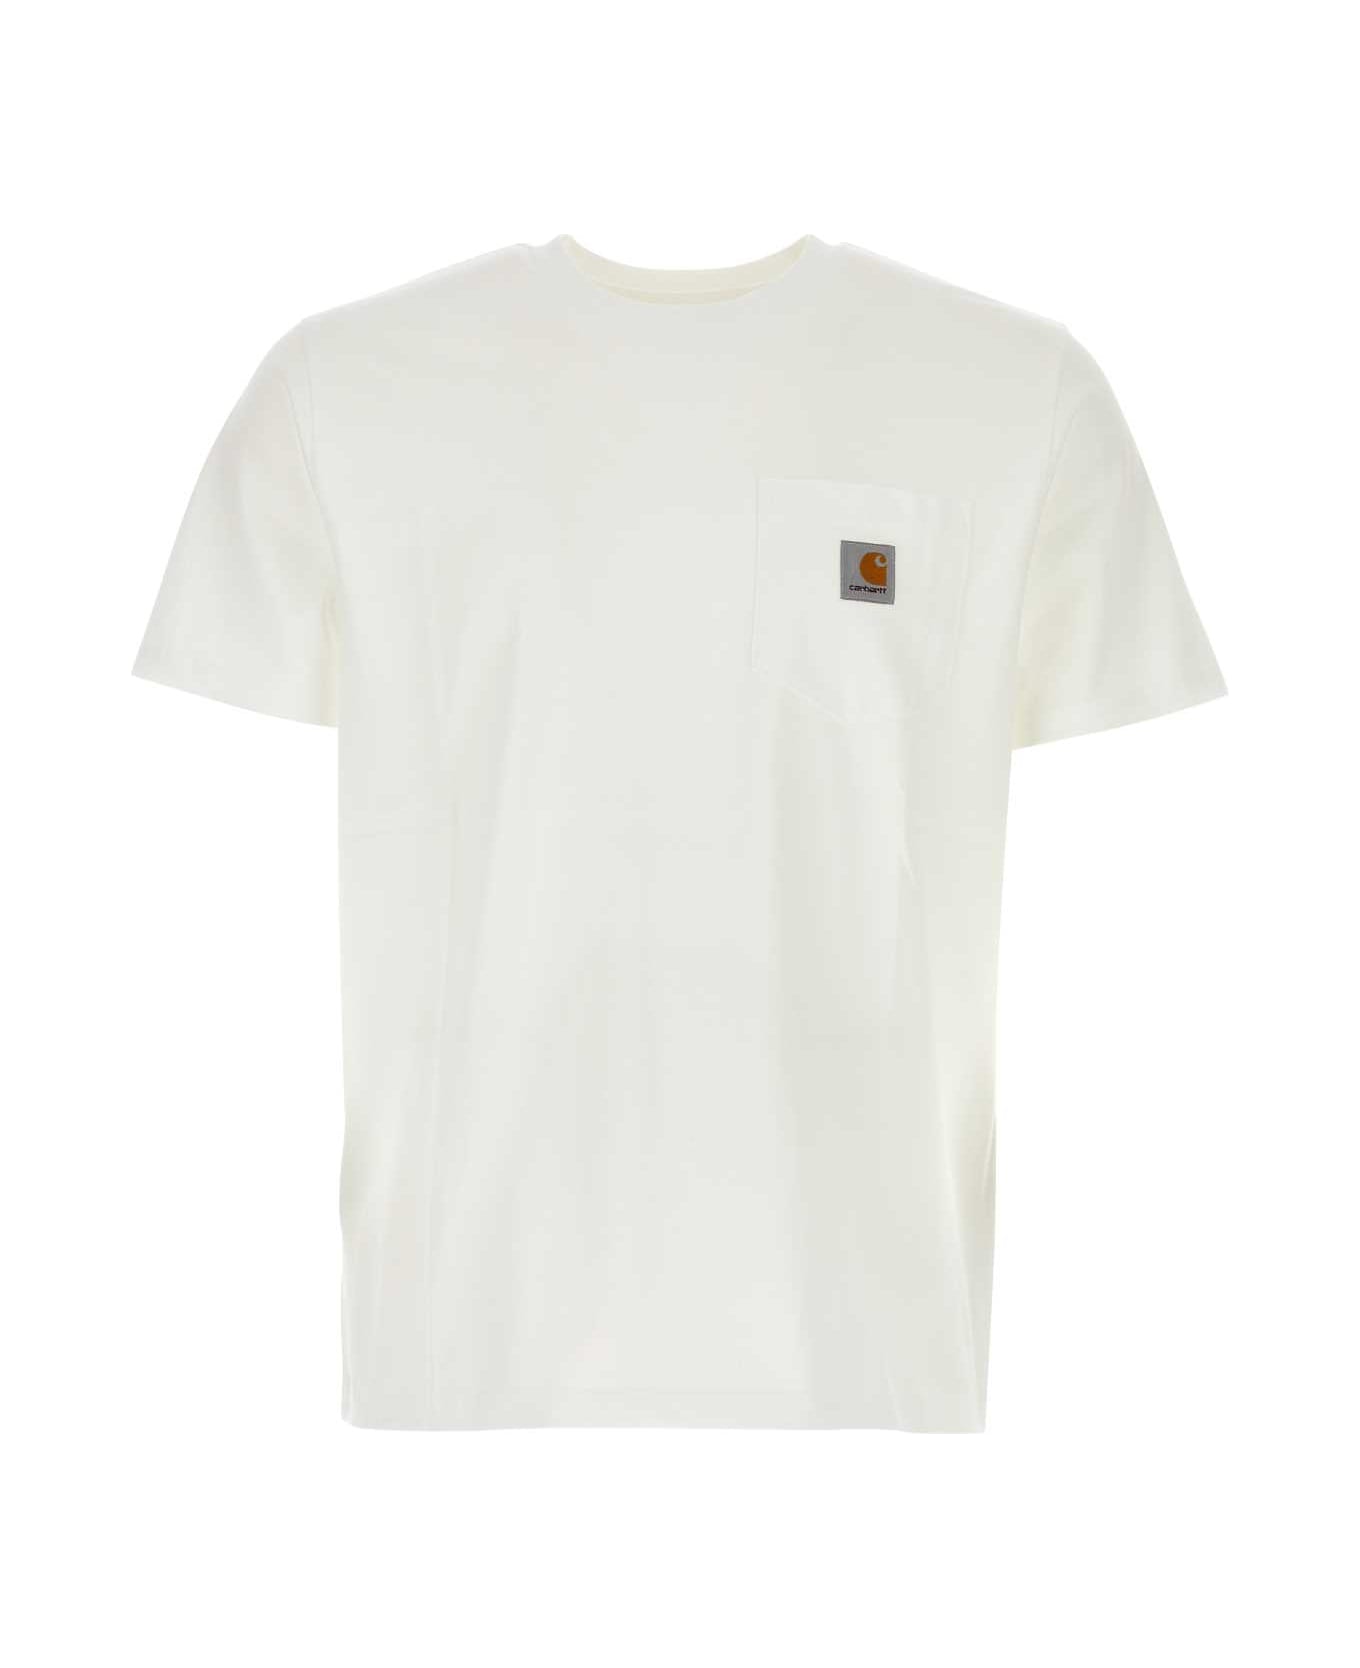 Carhartt White Cotton S/s Pocket T-shirt - WHITE Tシャツ